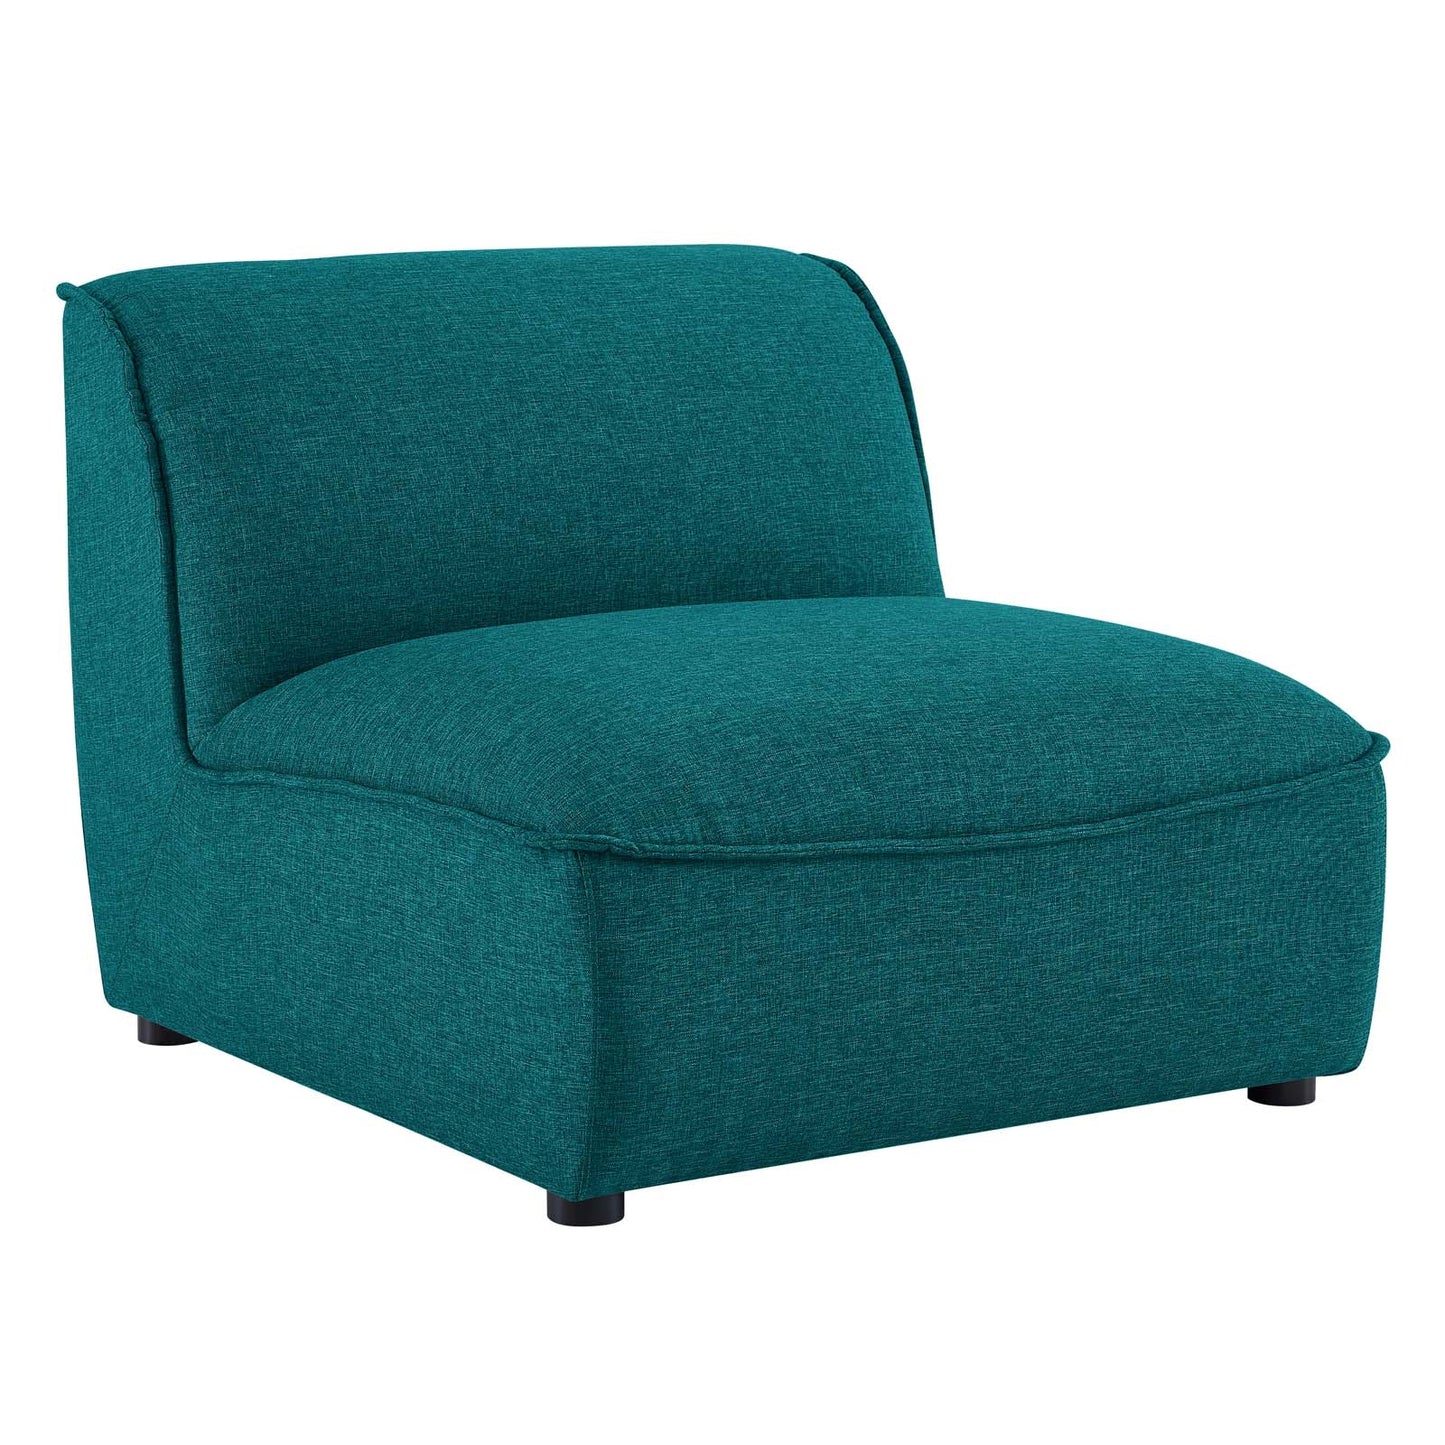 Marley Armless Chair